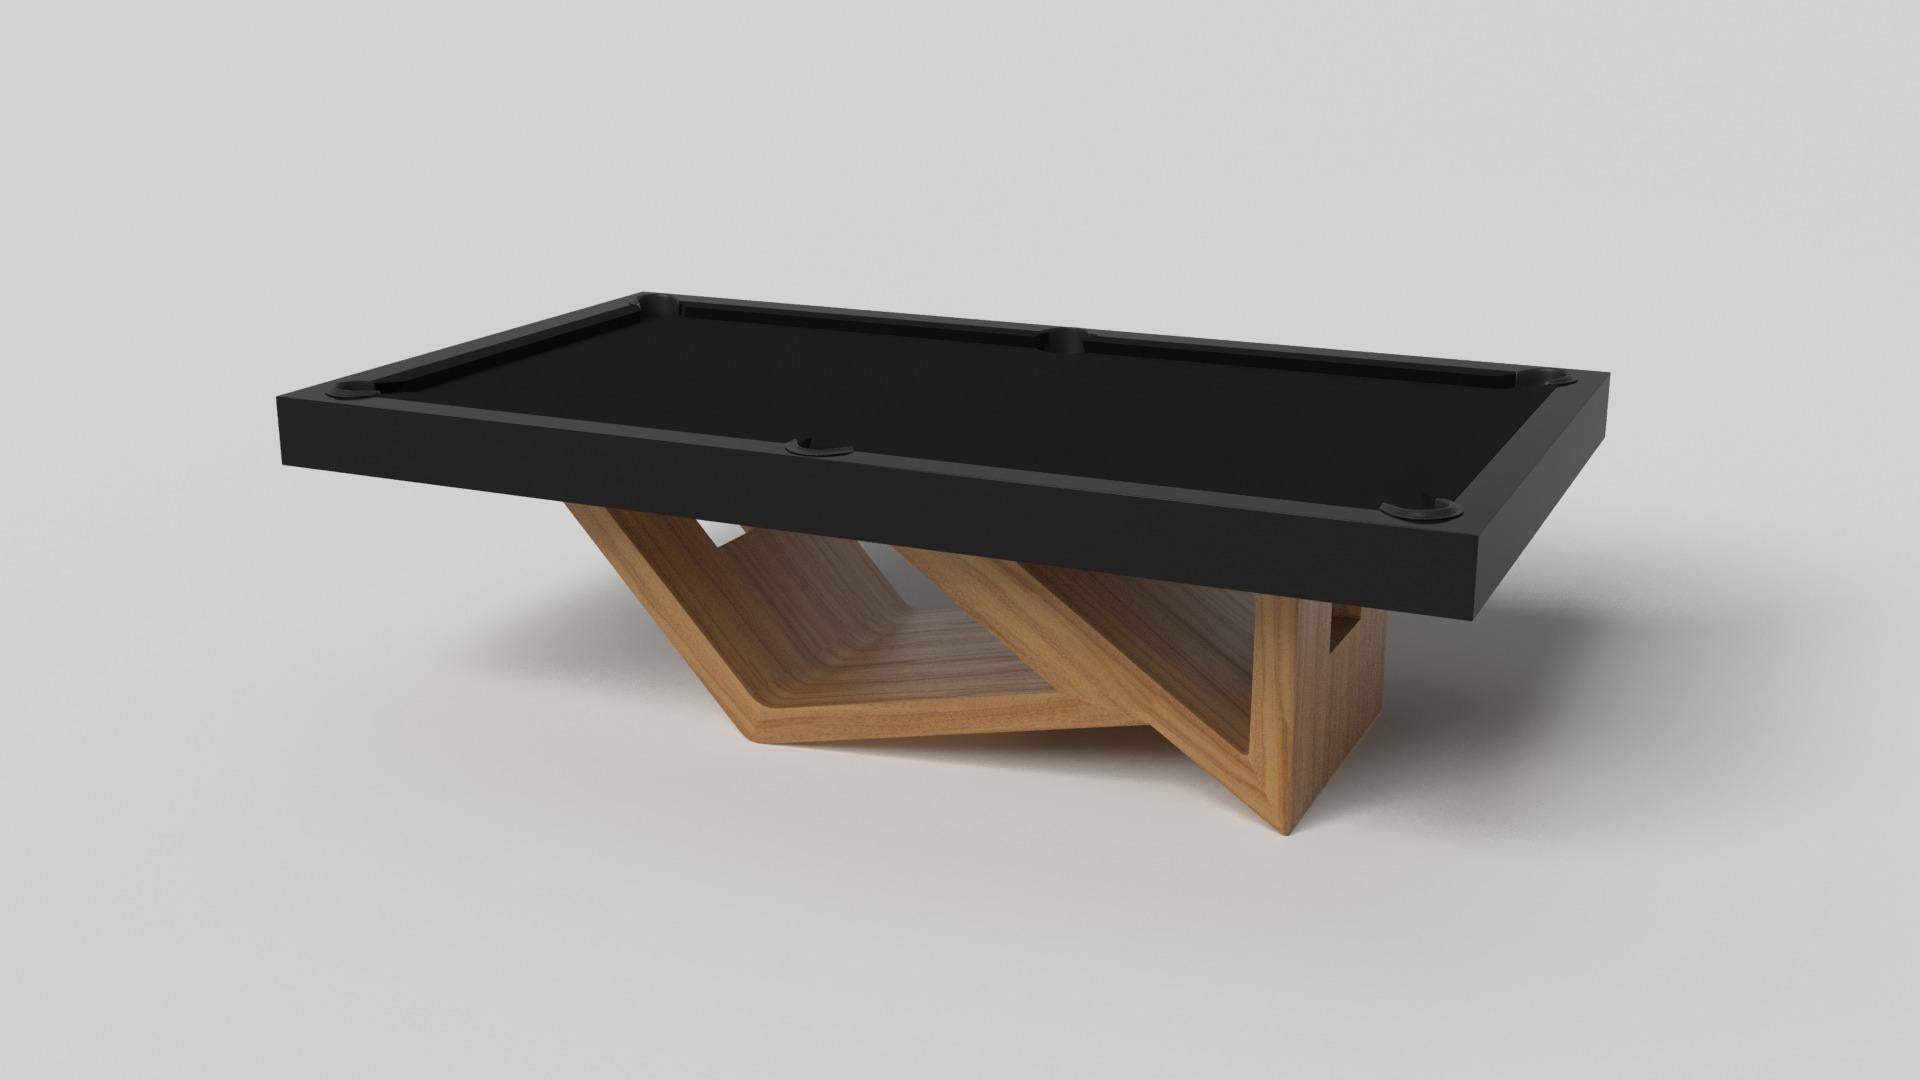 Der Billardtisch Rumba aus gebürstetem Aluminium ist von der Schönheit geometrischer Formen inspiriert und zeichnet sich durch eine Reihe von hohlen und massiven Formen aus, die eine versetzte, asymmetrische Basis bilden. Dieser maßgefertigte Tisch